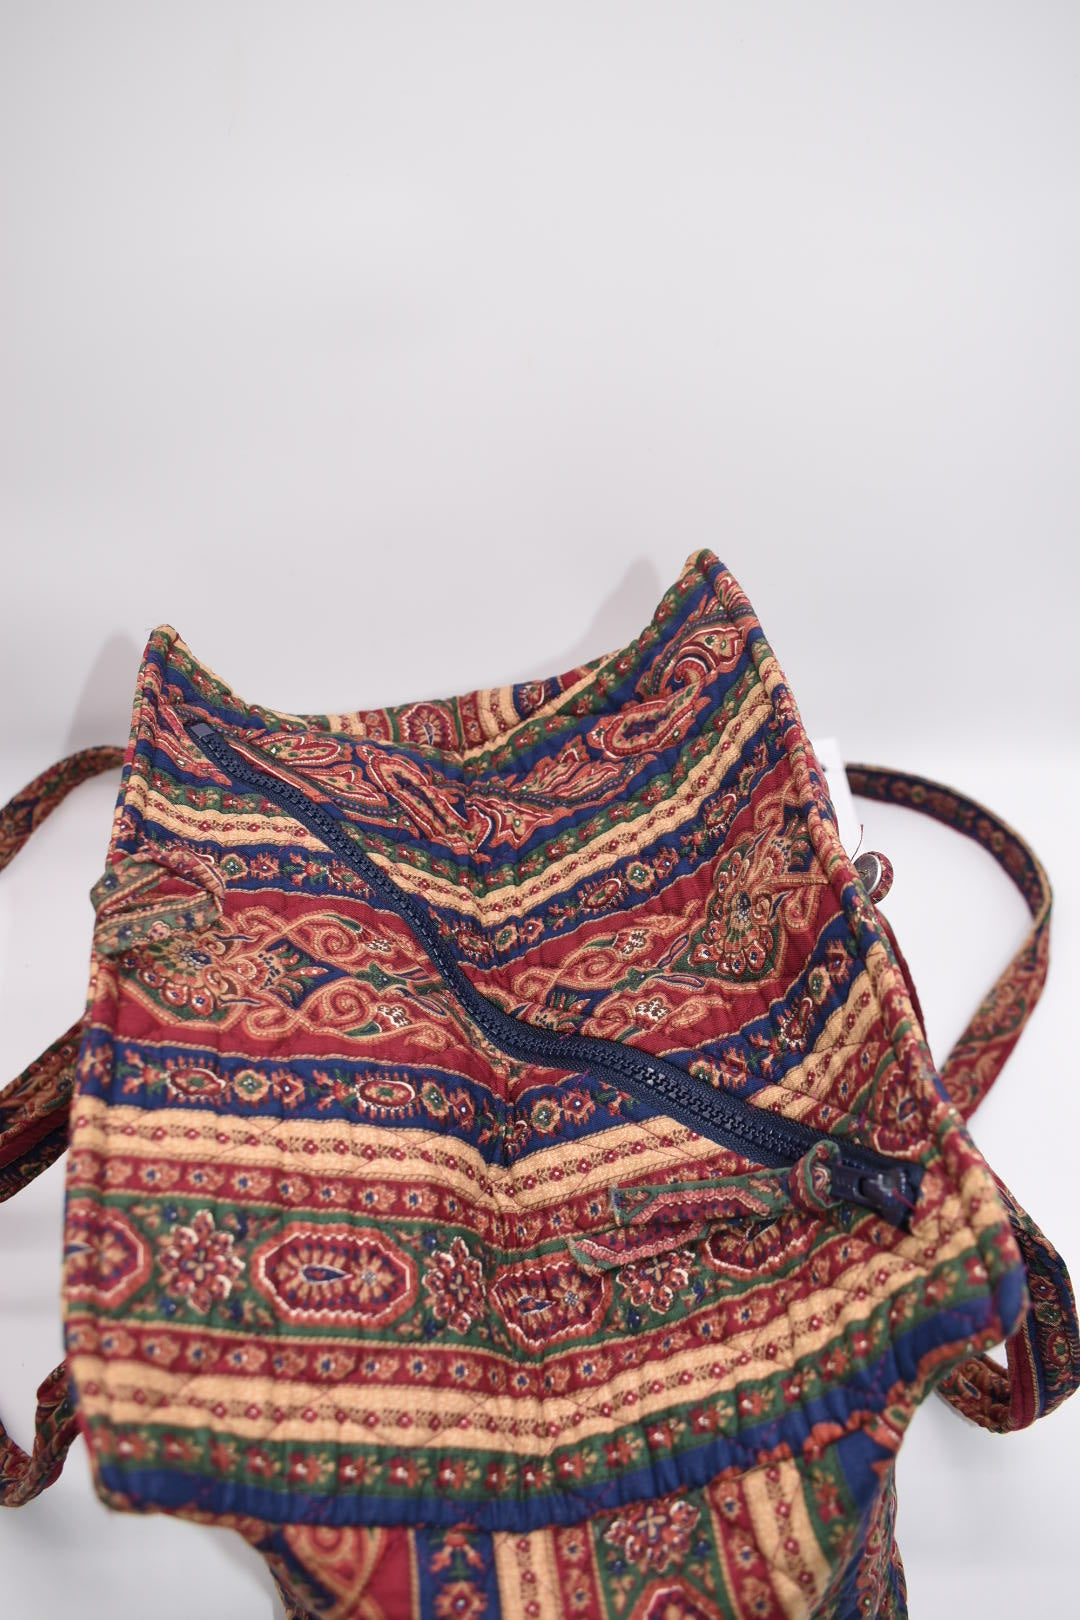 Vintage Vera Bradley Hoosier Shoulder Bag in "Paisley Medley Stripe -1987" Pattern